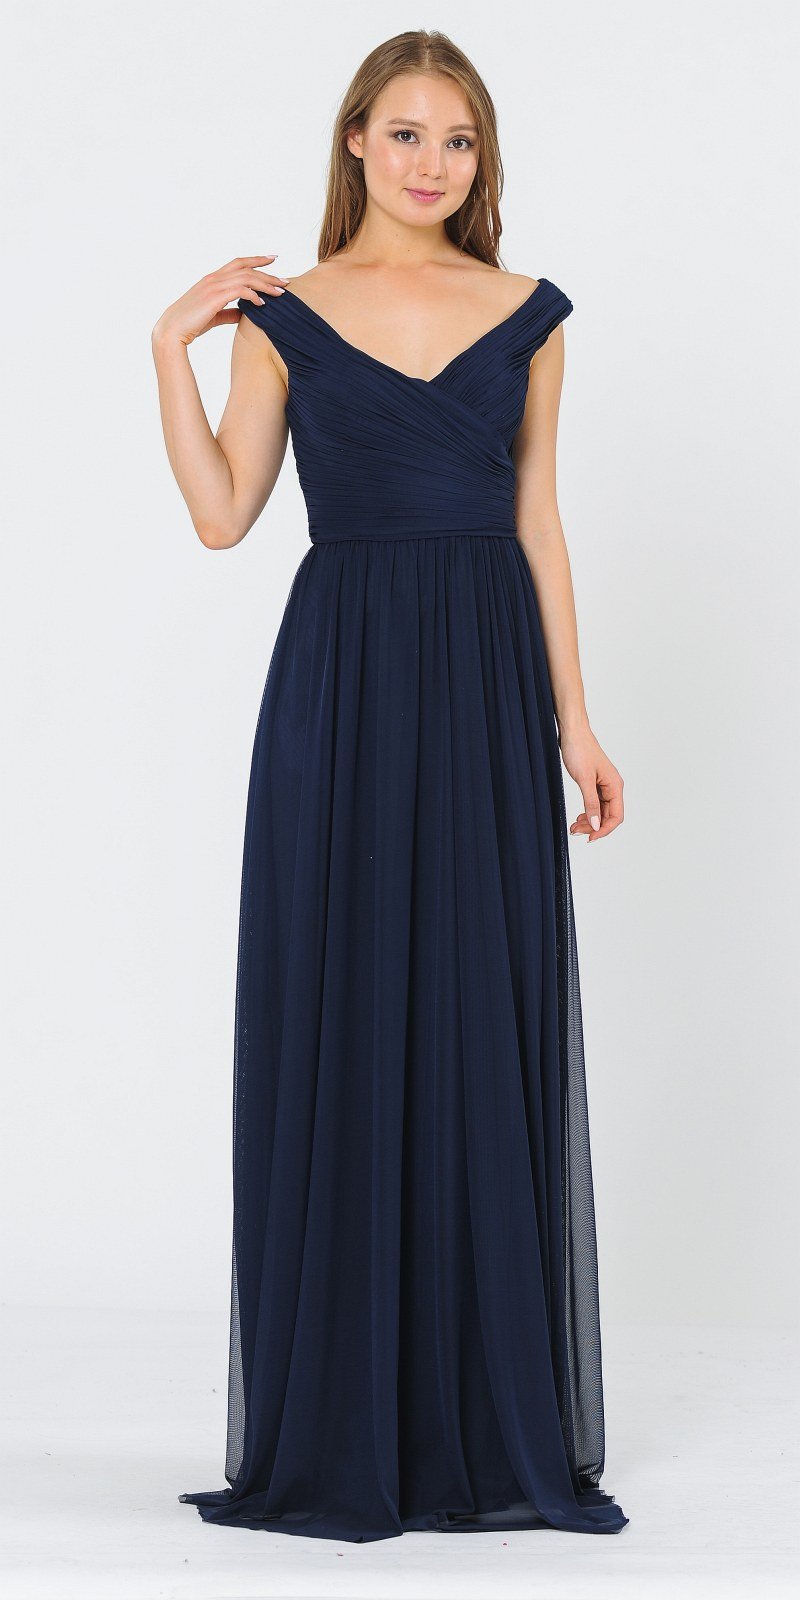 Off-Shoulder Ruched Bodice Long Formal Dress Dark Navy Blue